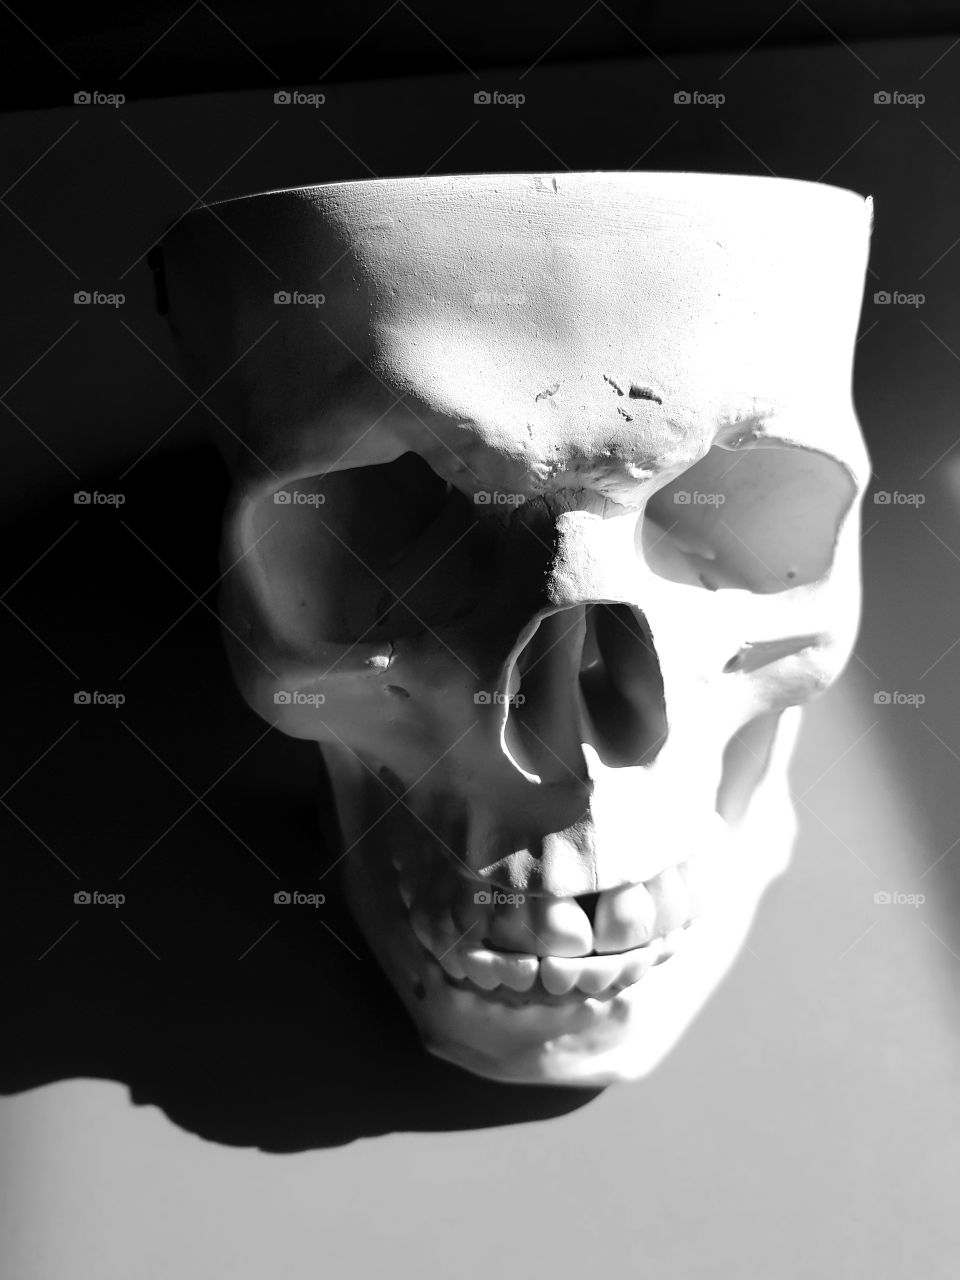 black and white skull